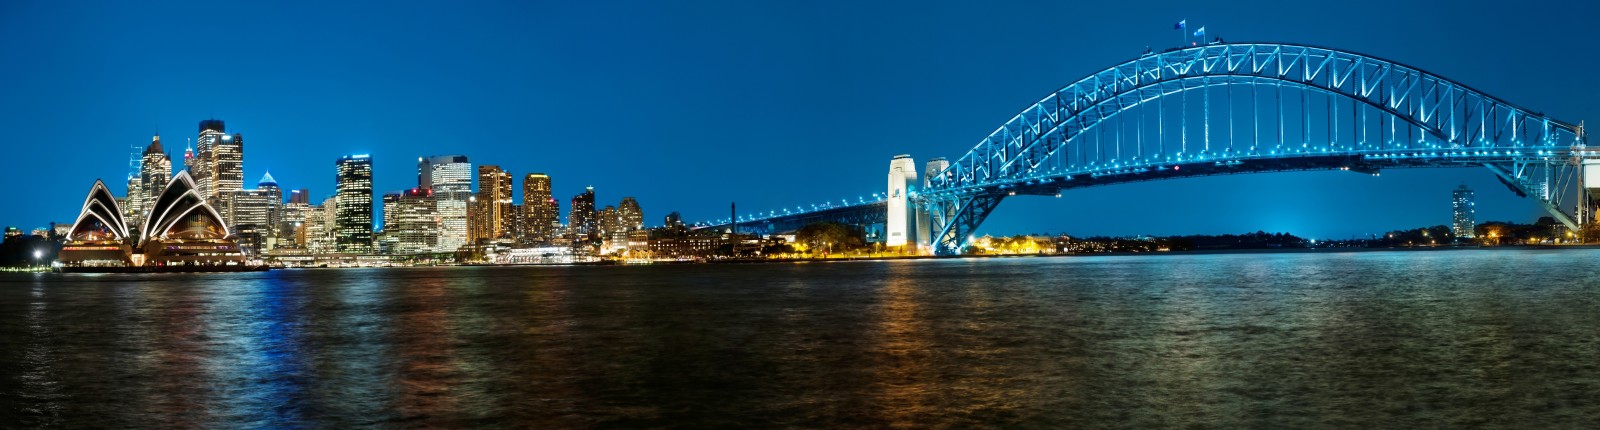 Vịnh, Thành phố đêm, Cầu, bức tranh toàn cảnh, Châu Úc, Sydney, Cầu cảng, Cảng Sydney